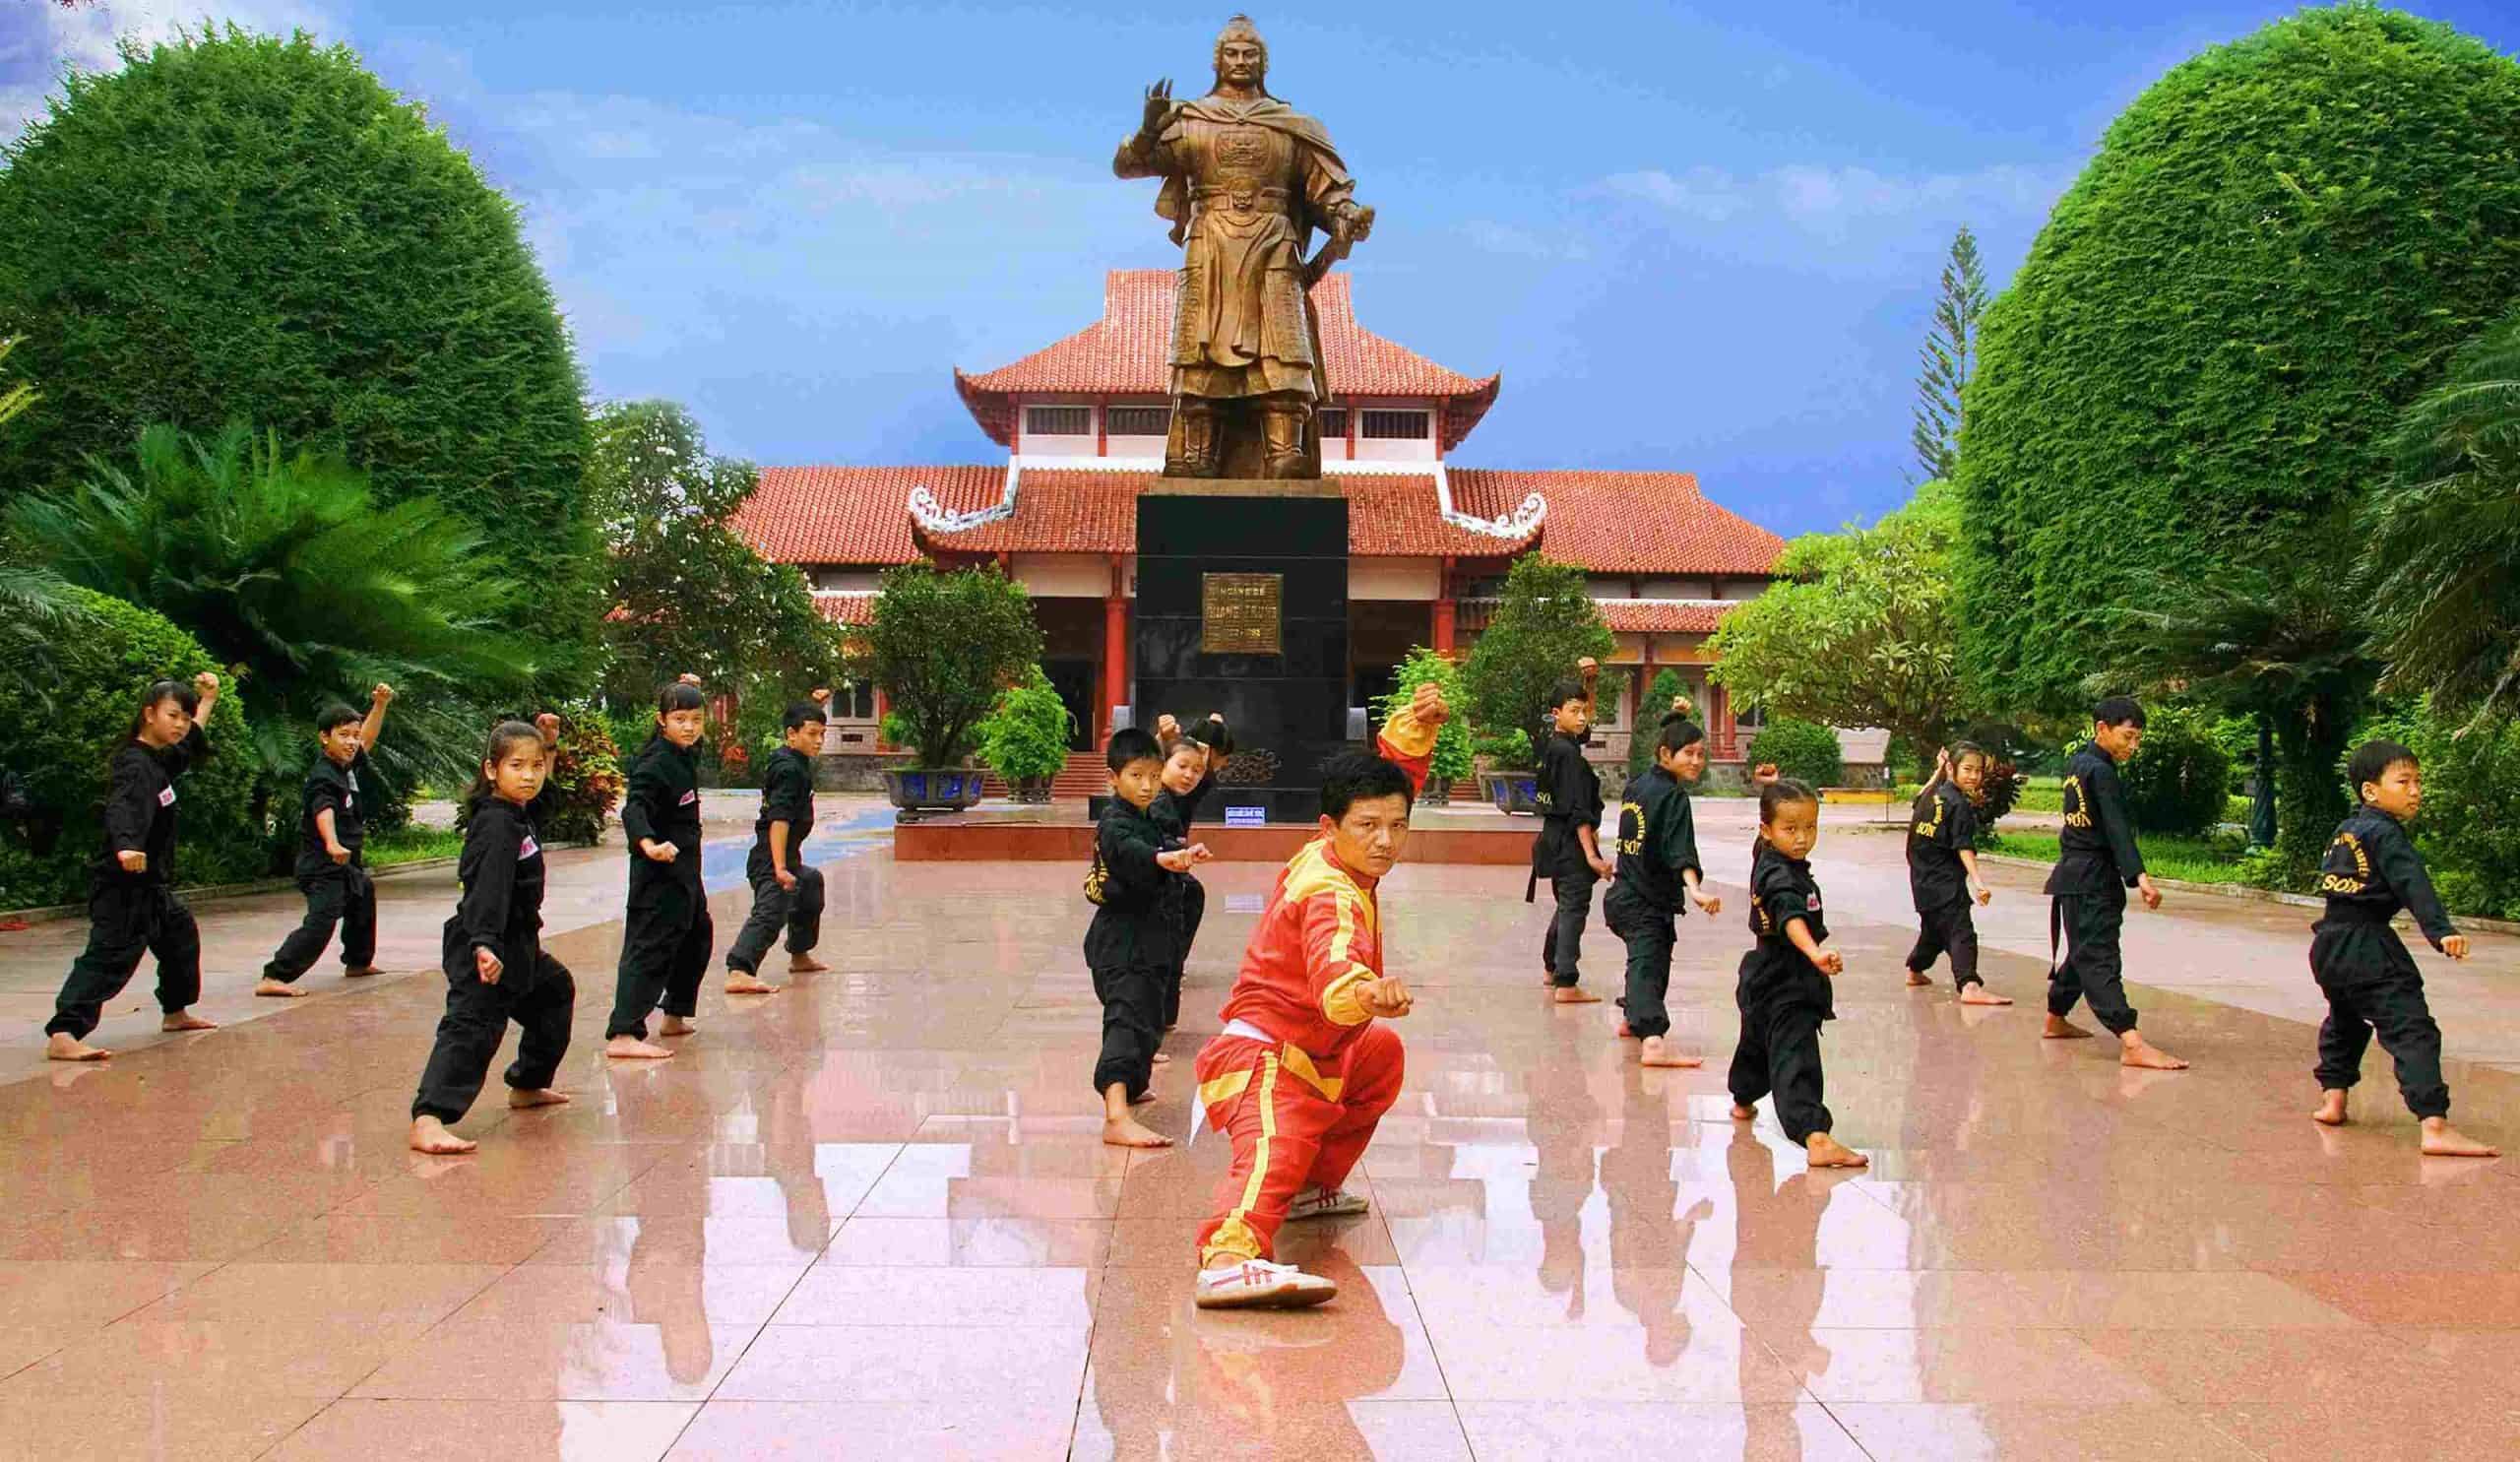 Du lịch Miền Trung - Quy Nhơn - Phú Yên dịp Tết Dương lịch từ Sài Gòn giá tốt